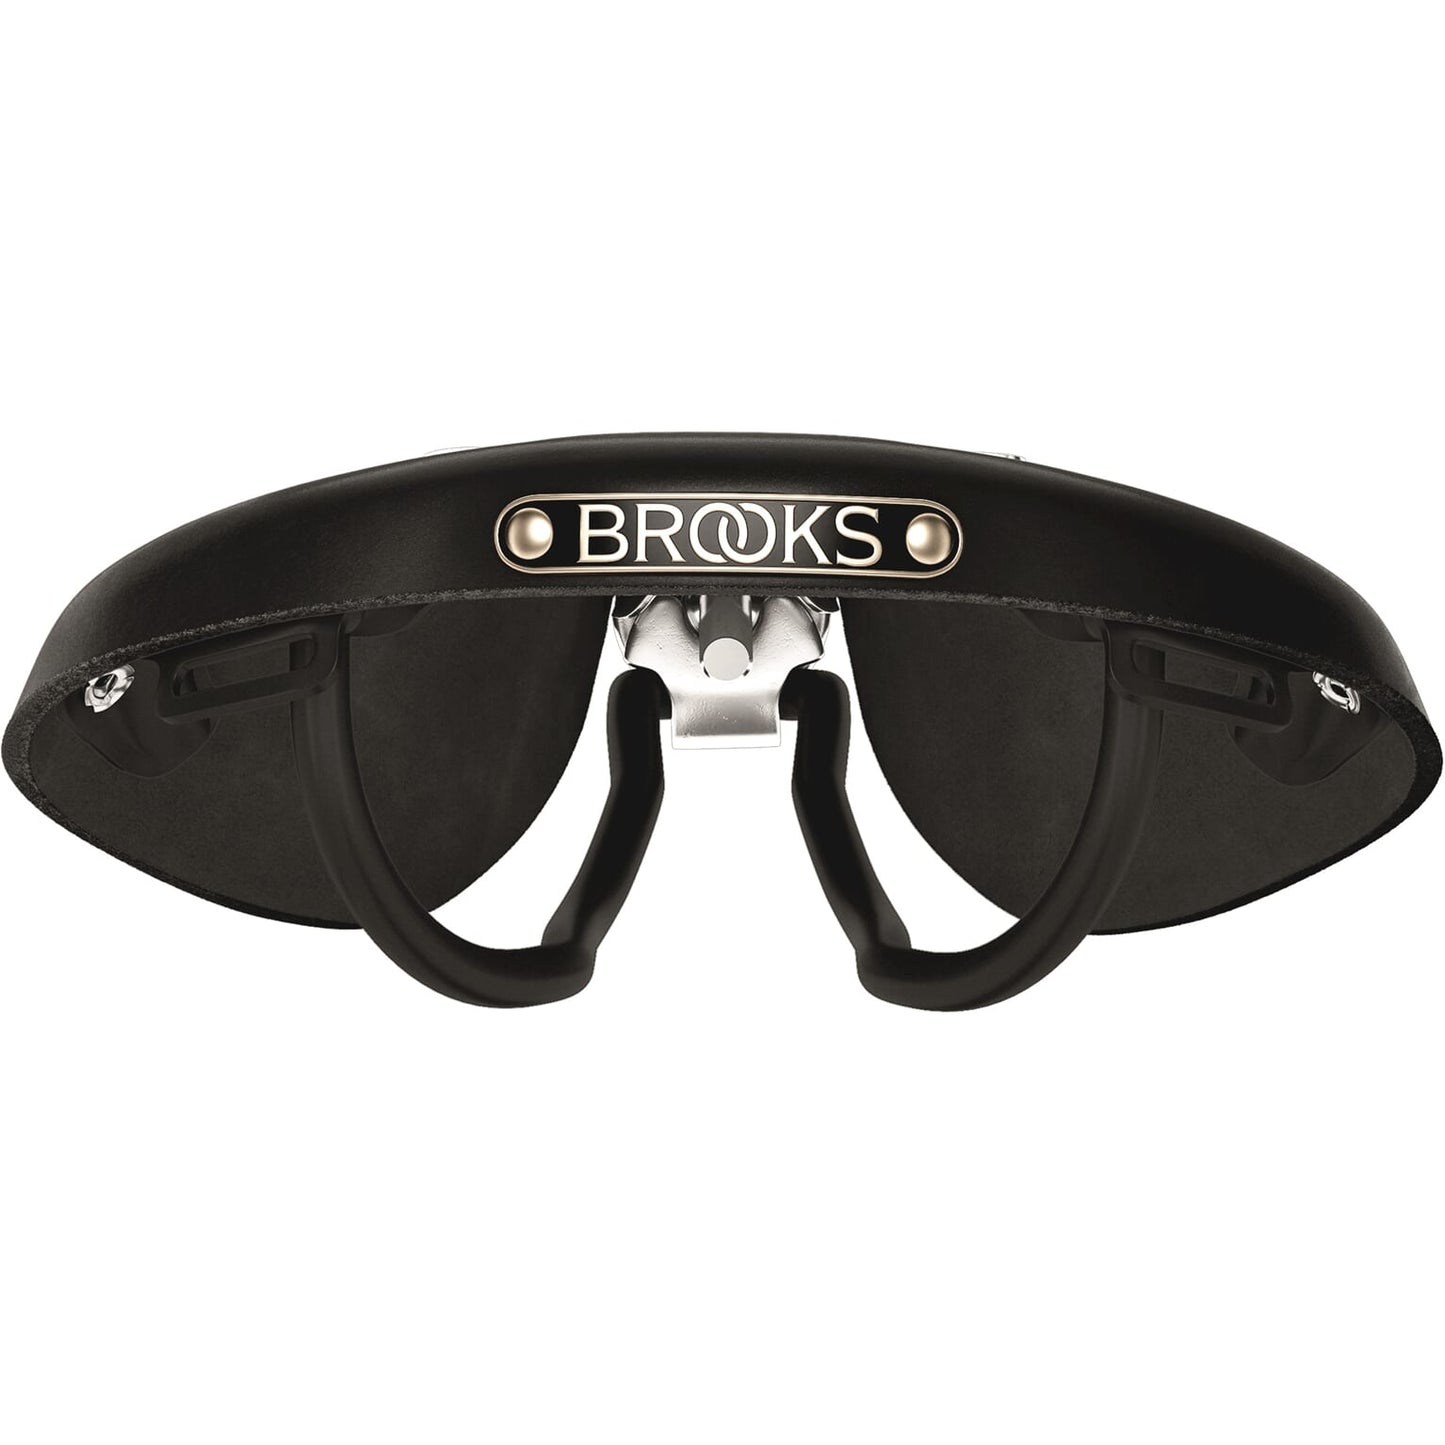 Brooks Saddle B17s Damas Negras